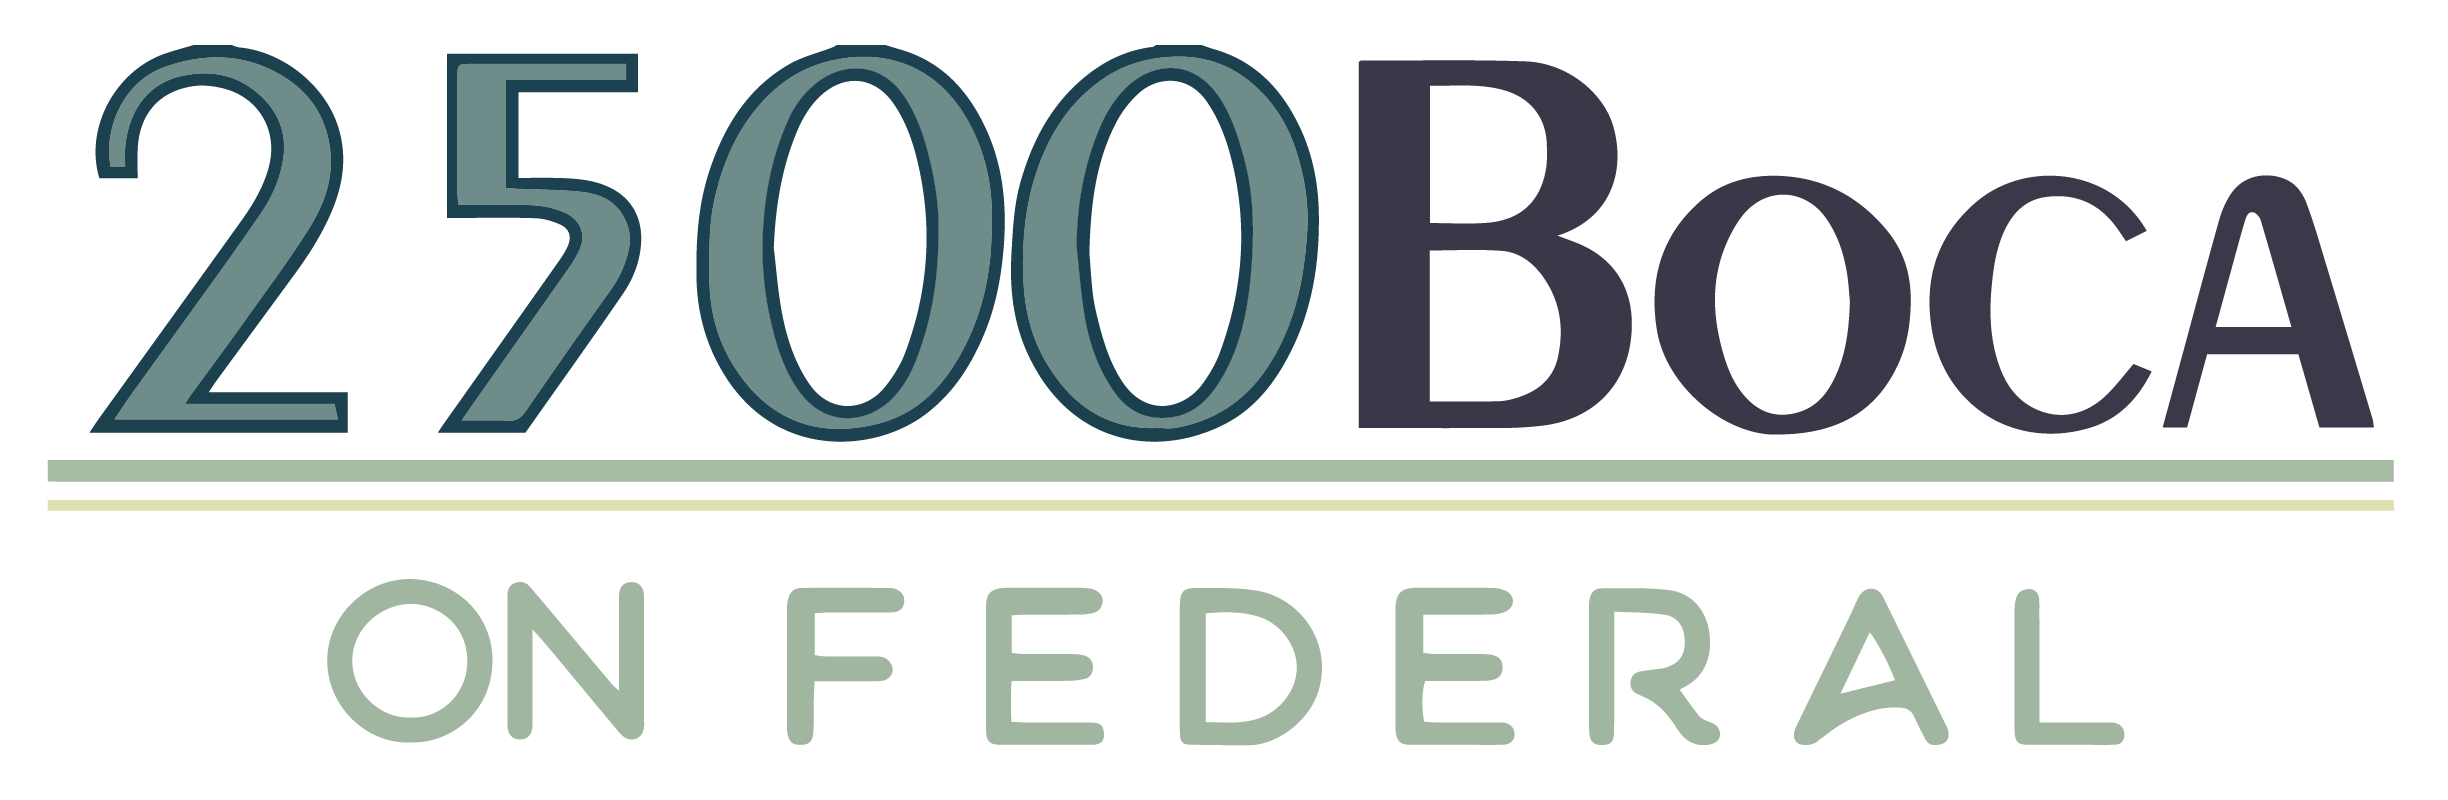 2500 Boca on Federal Promotional Logo